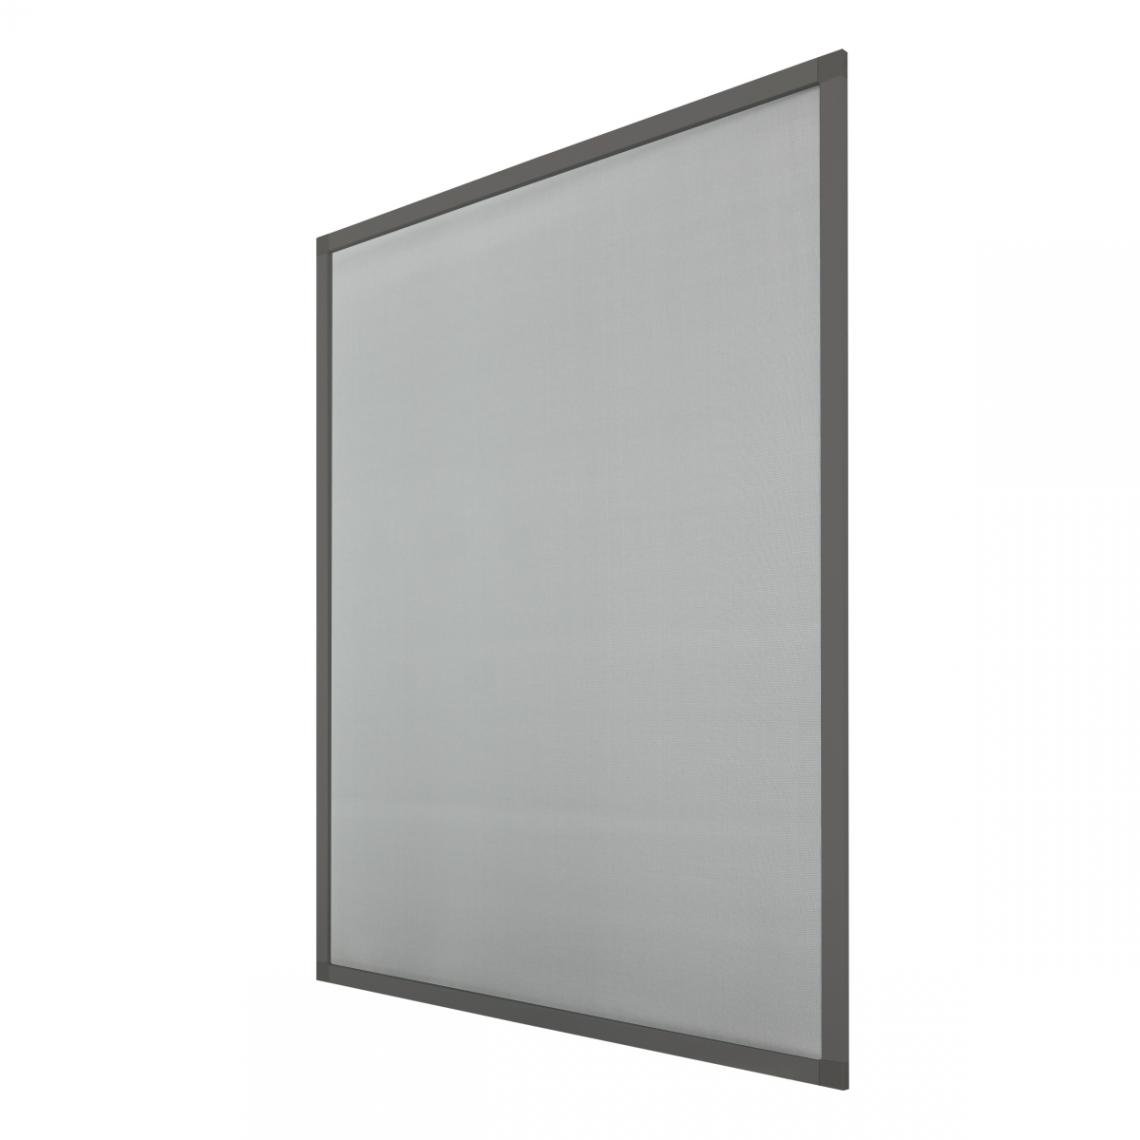 Ecd Germany - 80x100cm Moustiquaire pour fenêtre cadre en aluminium gris protection insectes - Moustiquaire Fenêtre